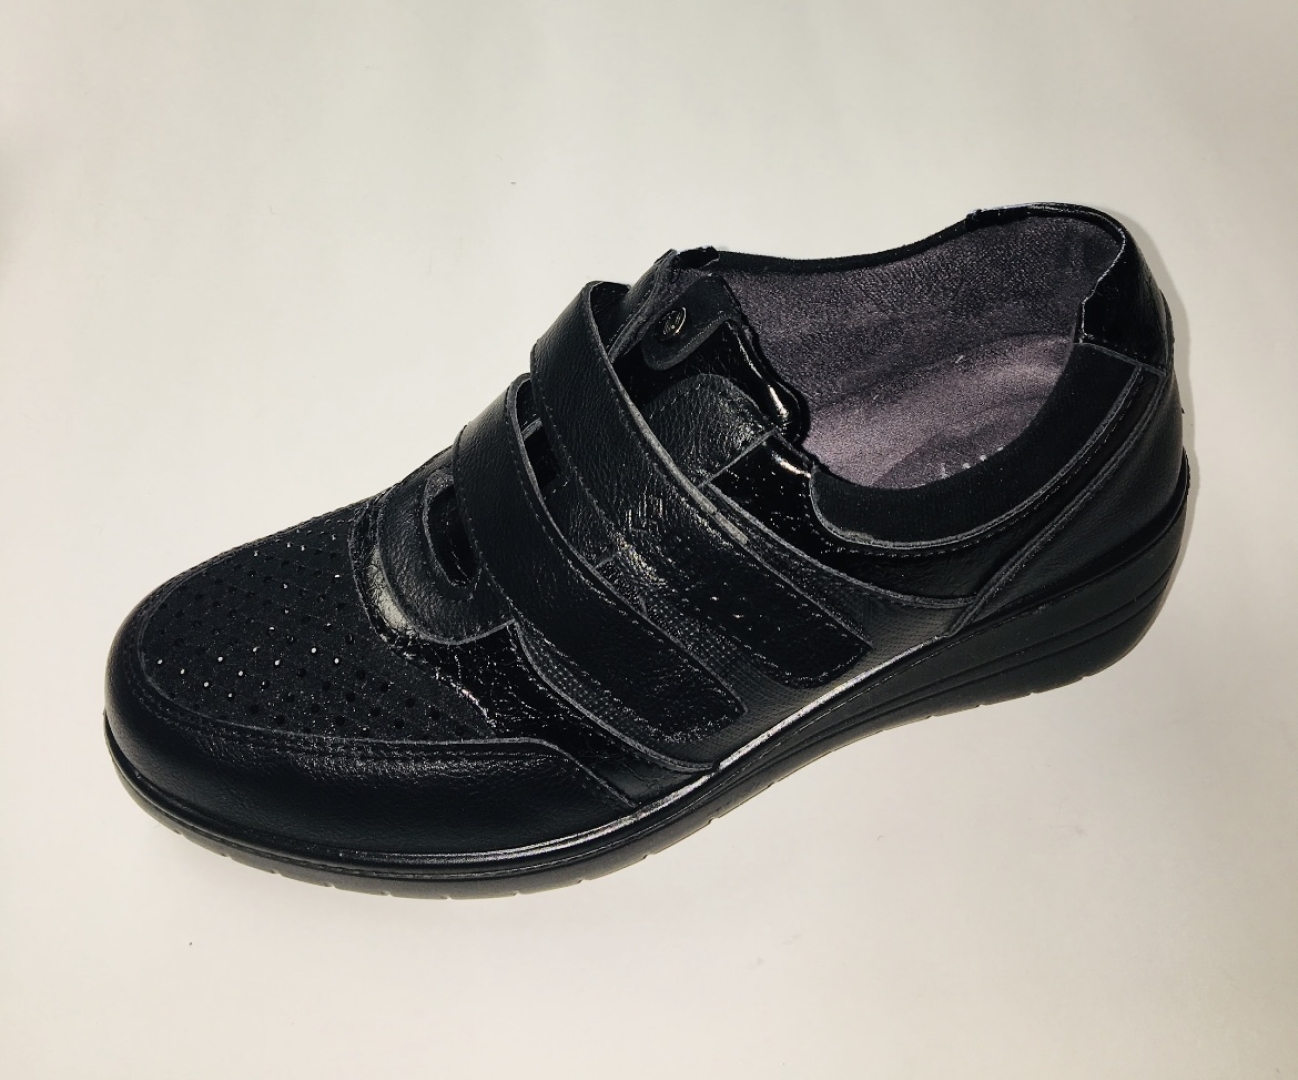 Zapato casual con veleros para mujer en negro de Mysoft 23M513. M-162